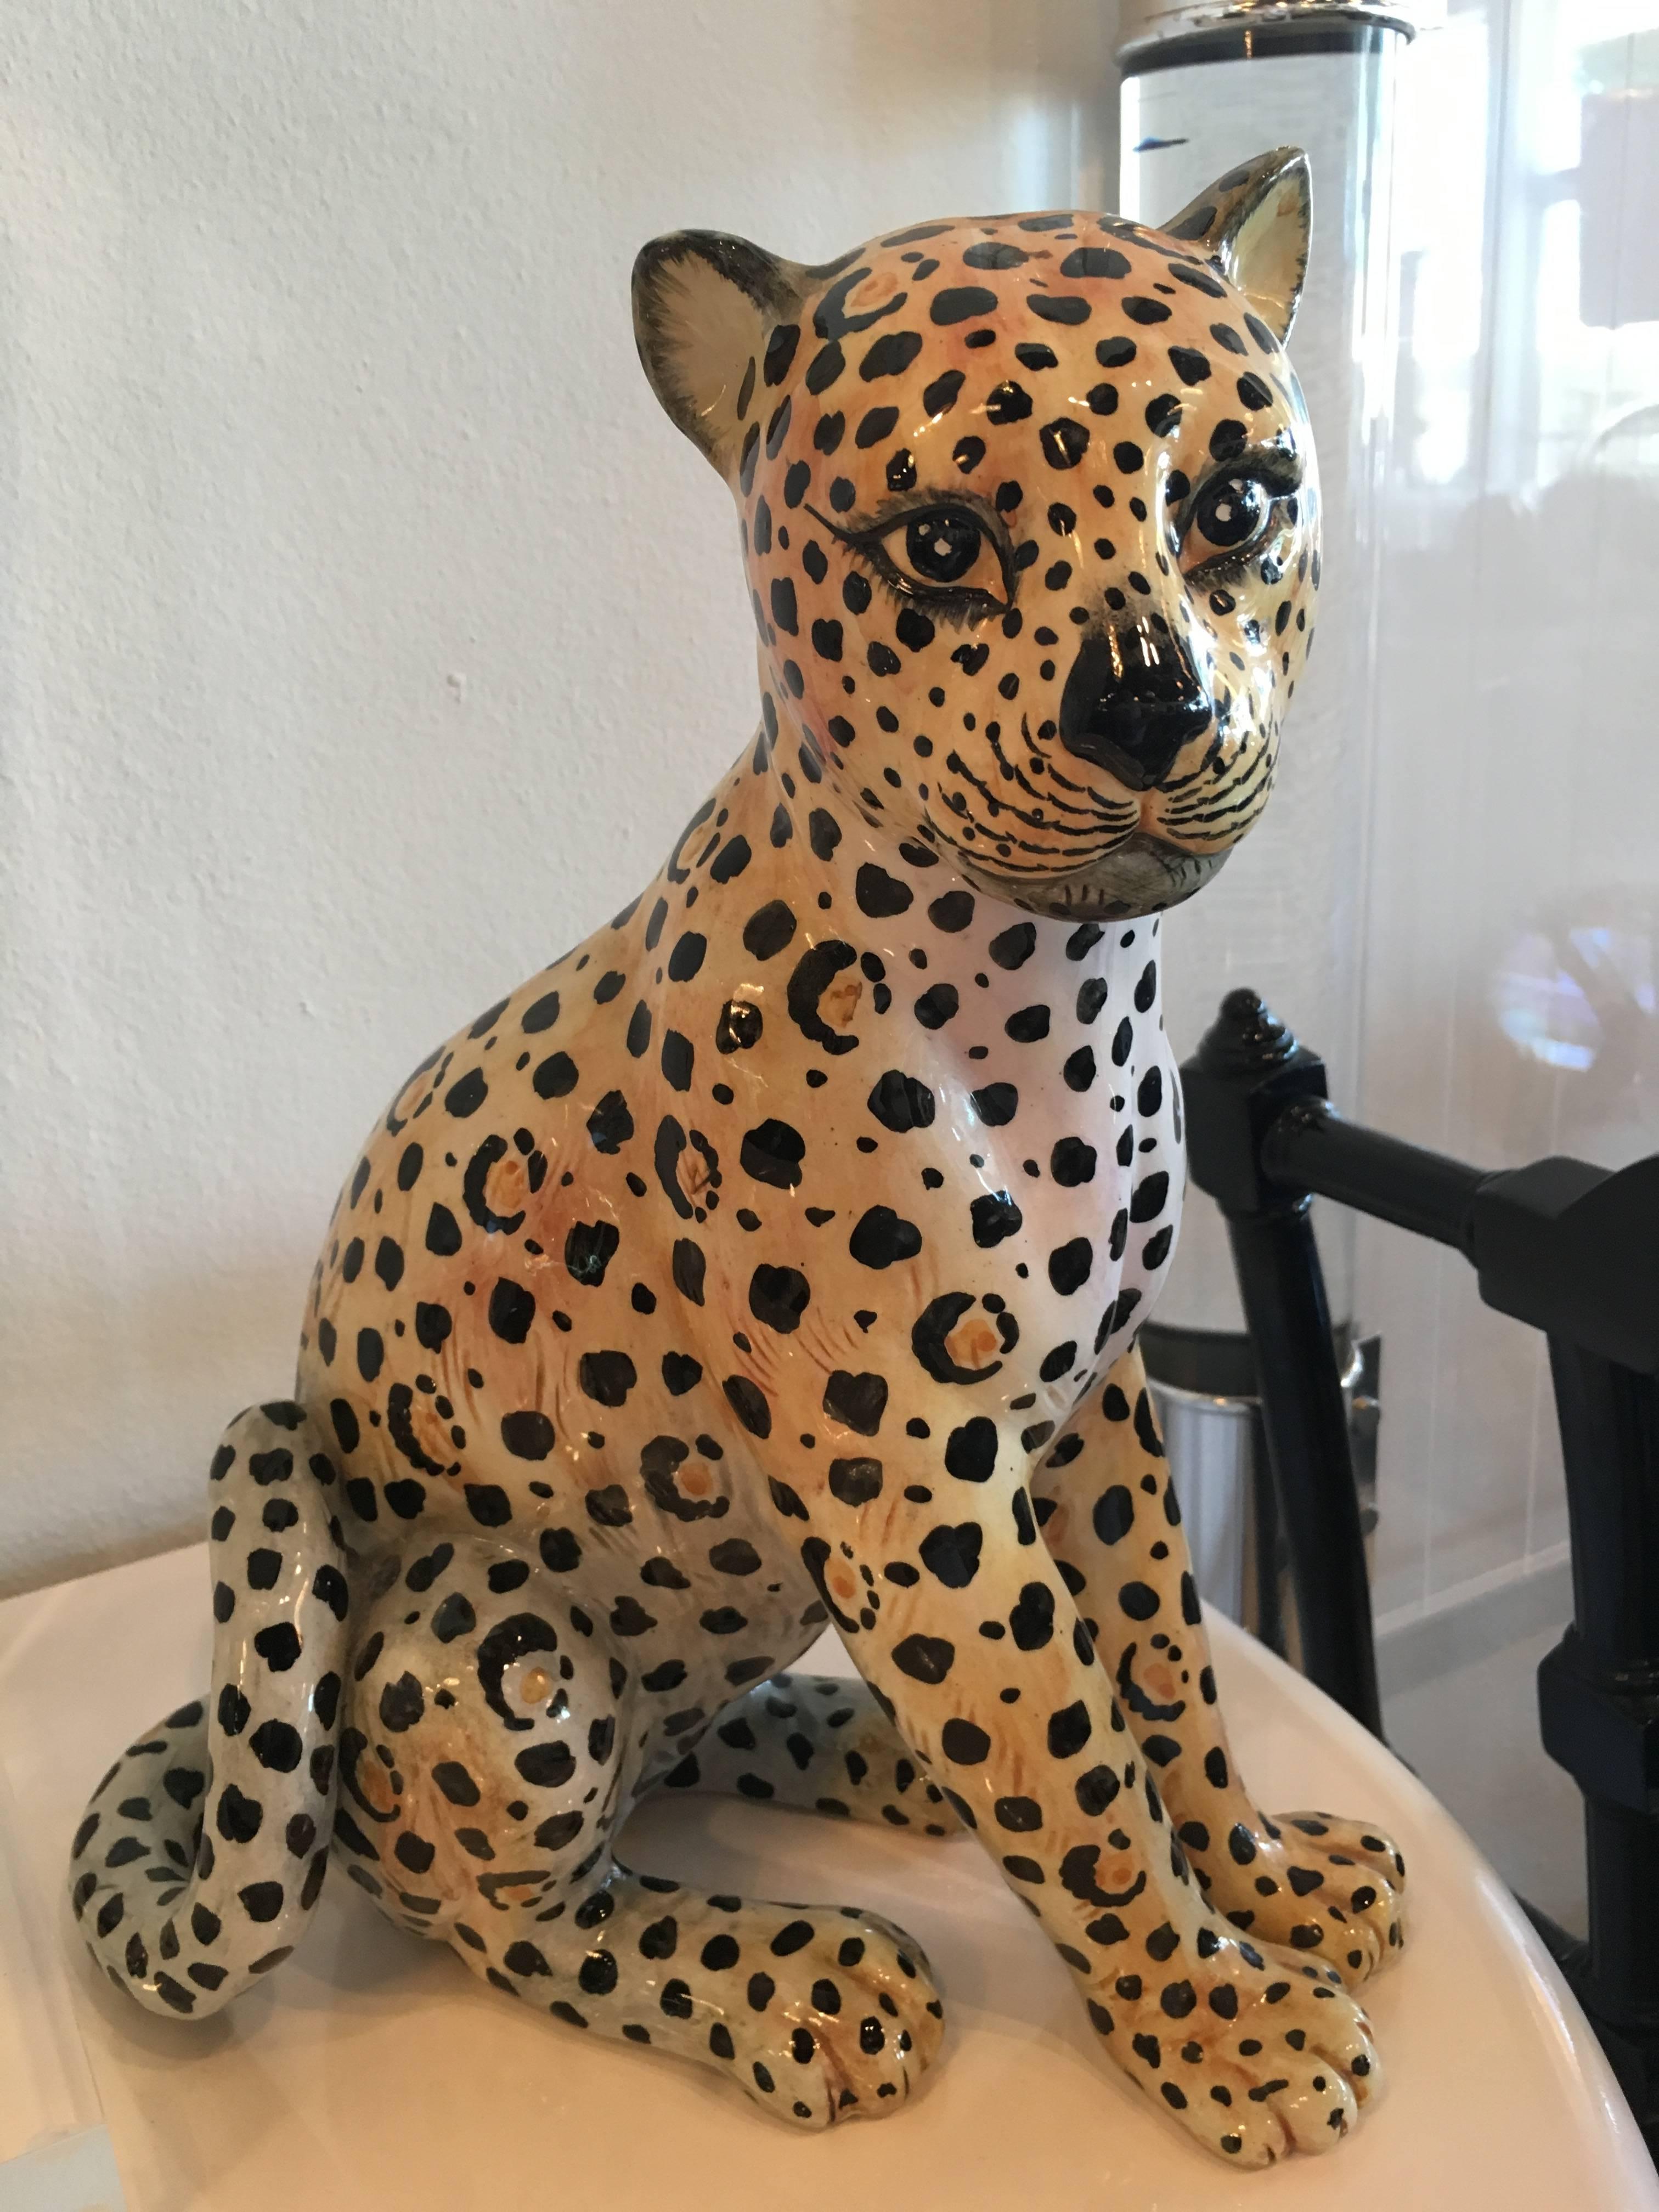 Merveilleuse statue de guépard vintage:: marquée Made in Italy. Pas d'ébréchures ni de cassures.